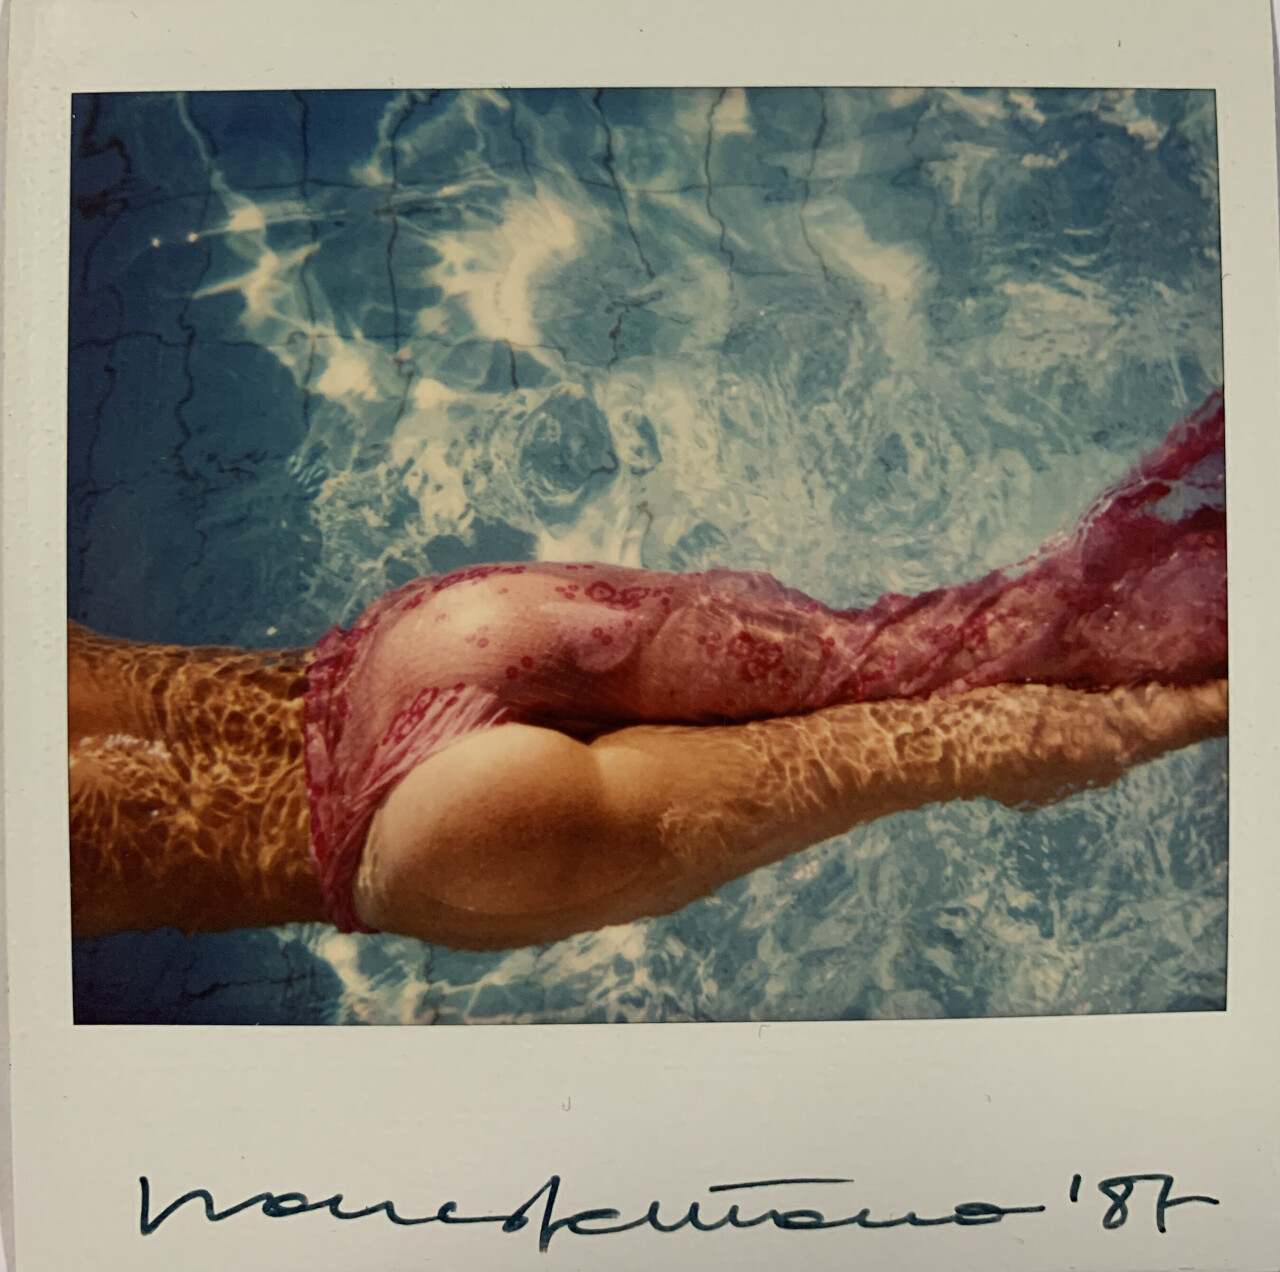 В бассейне, 1987. Фотограф Франко Фонтана